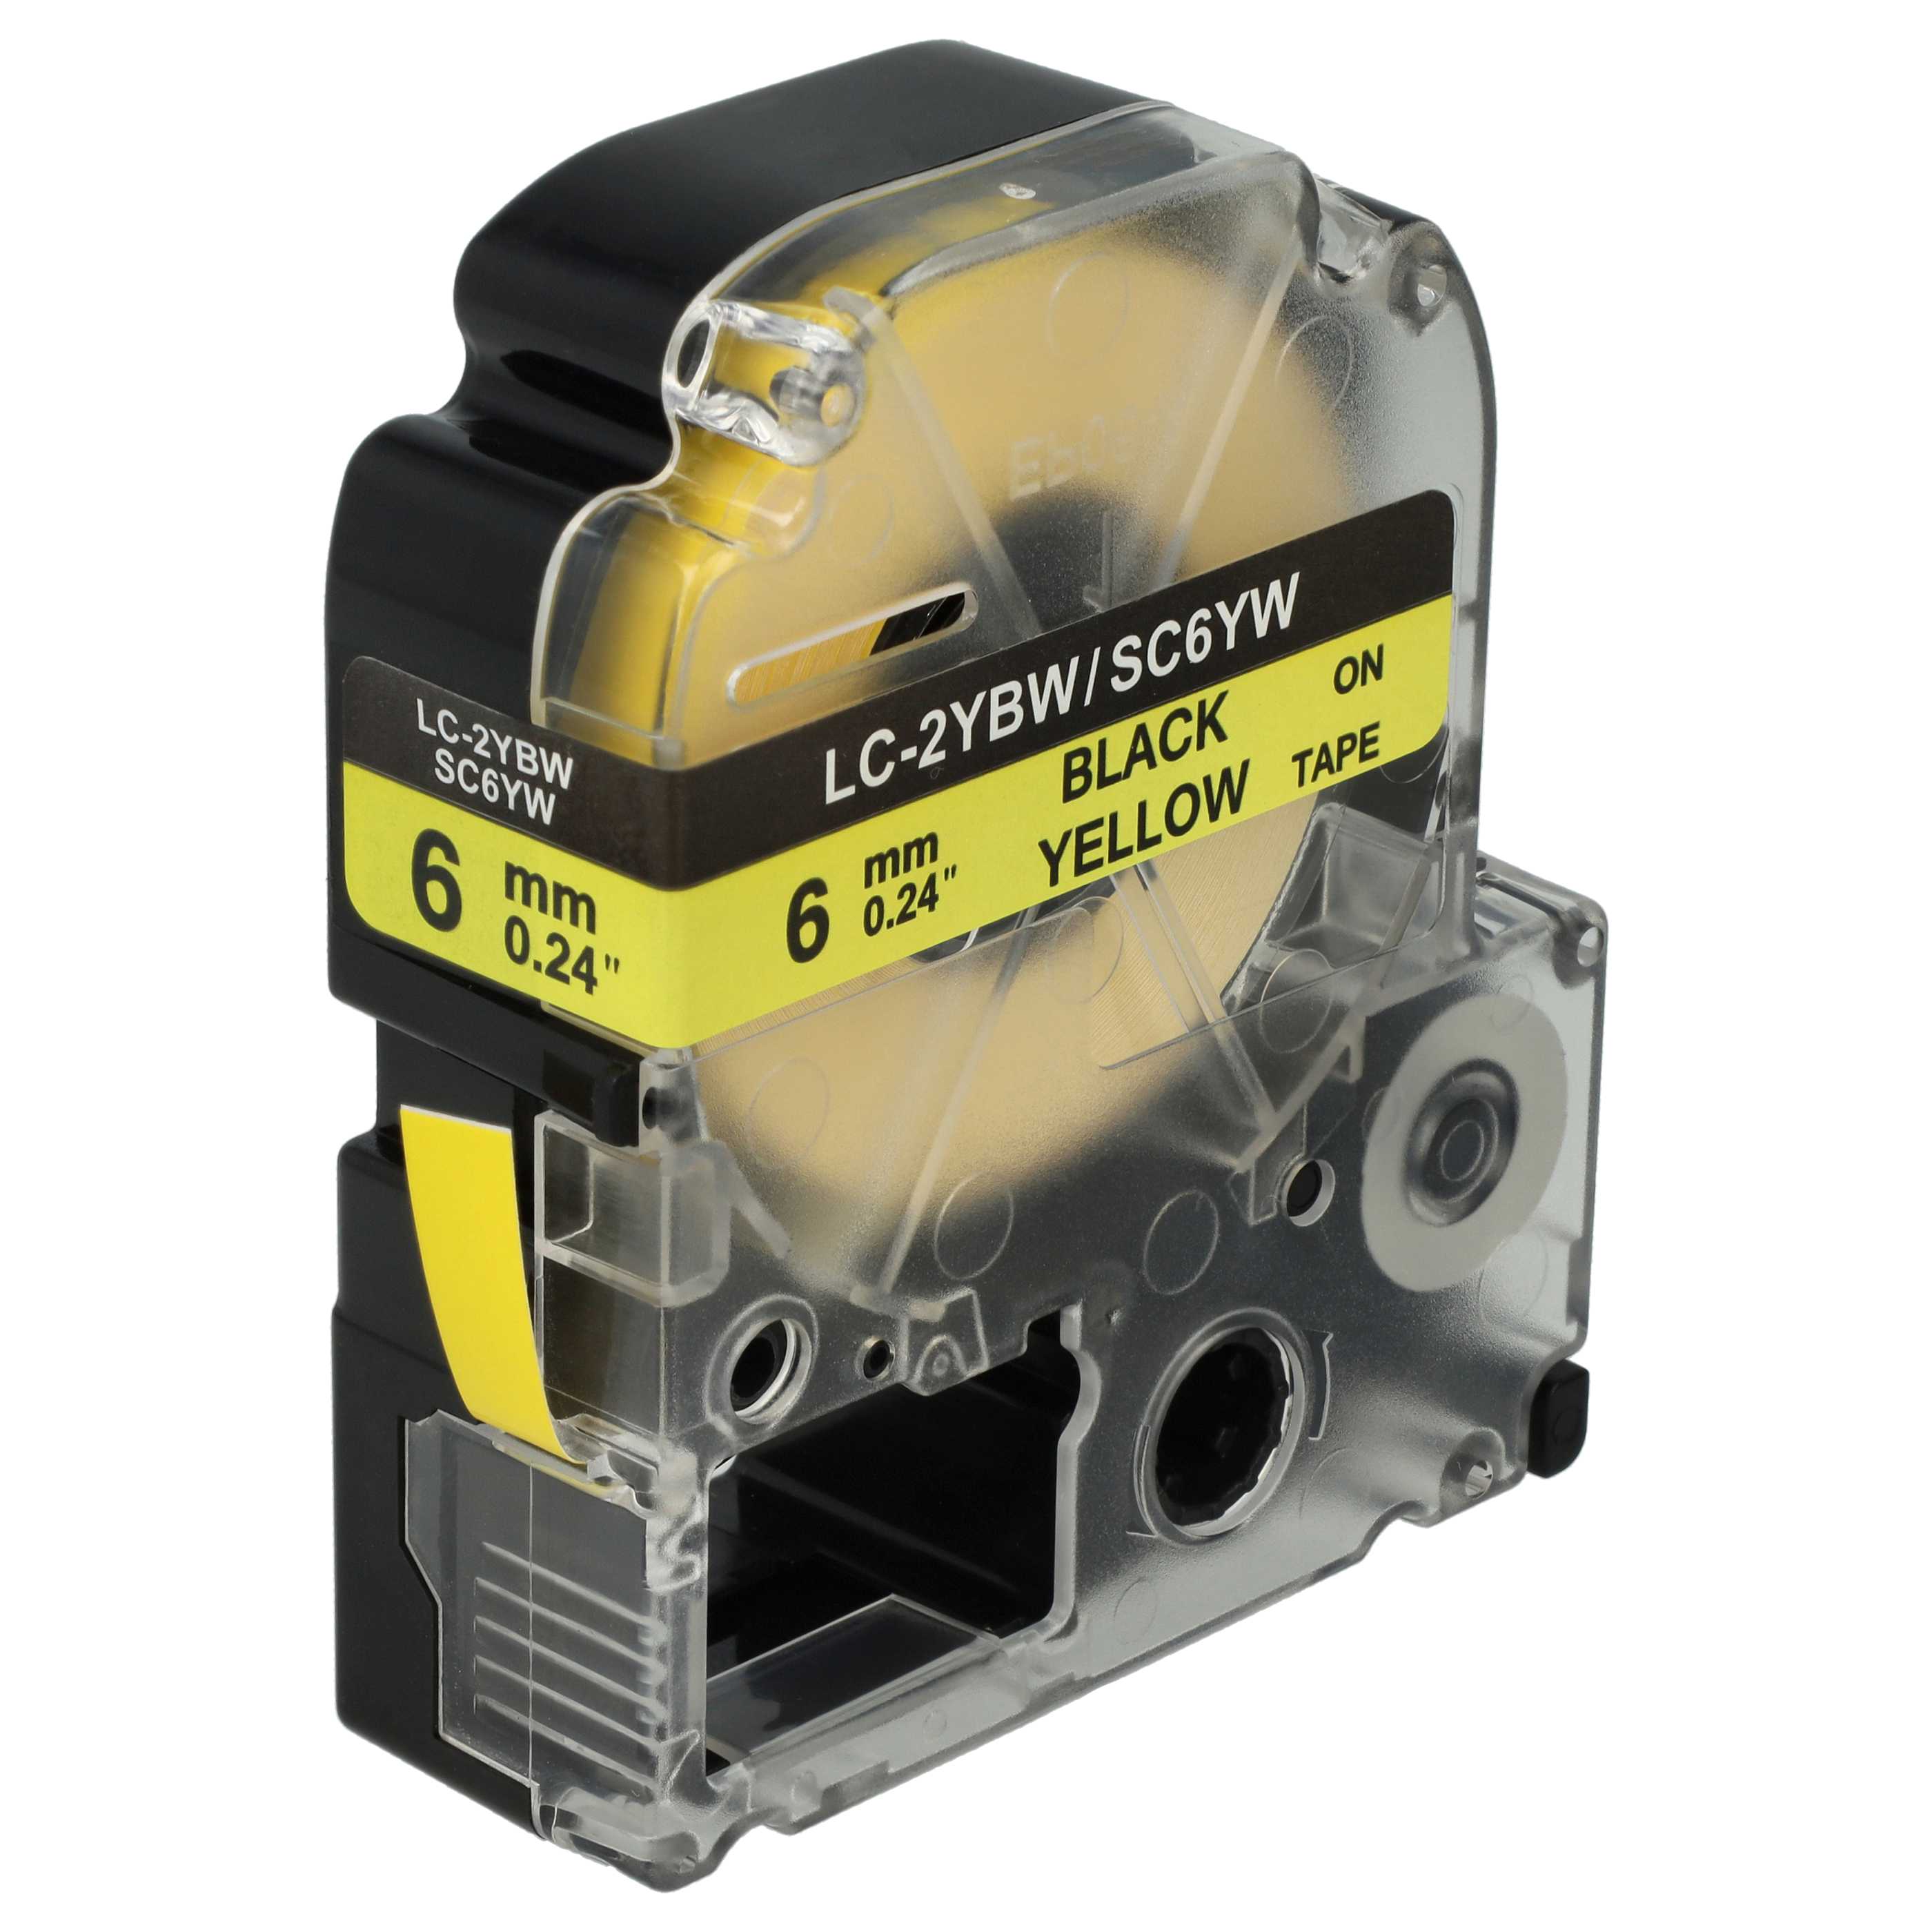 Cassetta nastro sostituisce Epson LC-2YBW per etichettatrice Epson 6mm nero su giallo